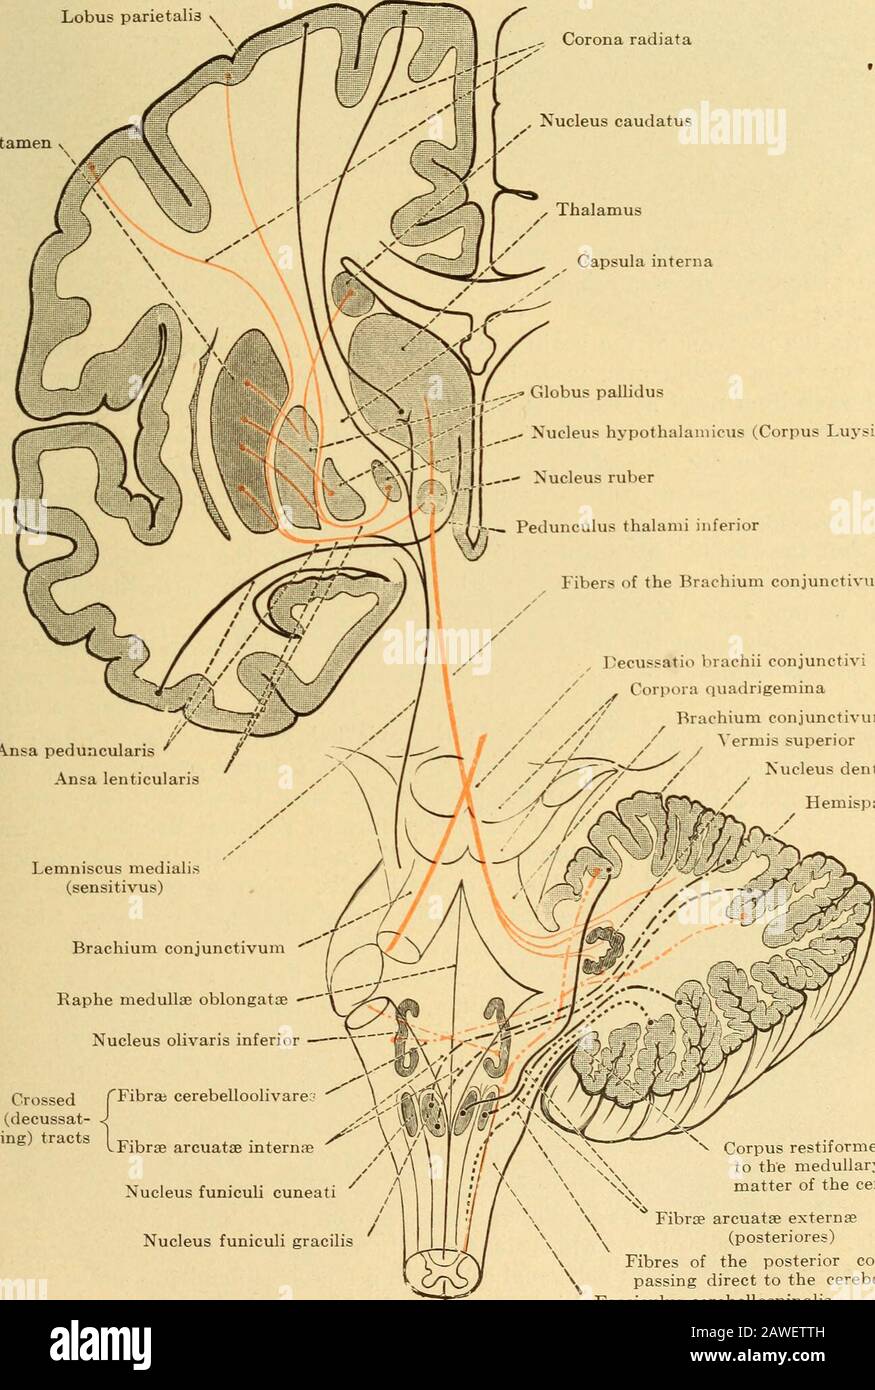 Maladies du système nerveux .. . Méd. SPI^Fig. 109.—Schéma Montrant les bras des Tracts Cereblar. (Après Edinger.) accrochent les faisceaux fermés du tractus pyramidal (Fig. 96). De nombreuses cellules nerveuses dont une partie des fibres semble se terminer sont ici déposées, alors que, d'un autre côté, les fibres de ces cellules montent au cervelet, probablement dans le tractus thématieux. Certaines de ces fibres s'étendent cependant au rache des pons. LES SYSTÈMES neurone ET LES MALADIES NEURONE 109 qu'ils traversent partiellement, puis passent dorsalement à la région du teg-mentum où ils peuvent être tracés vers le cerebrum. E Banque D'Images